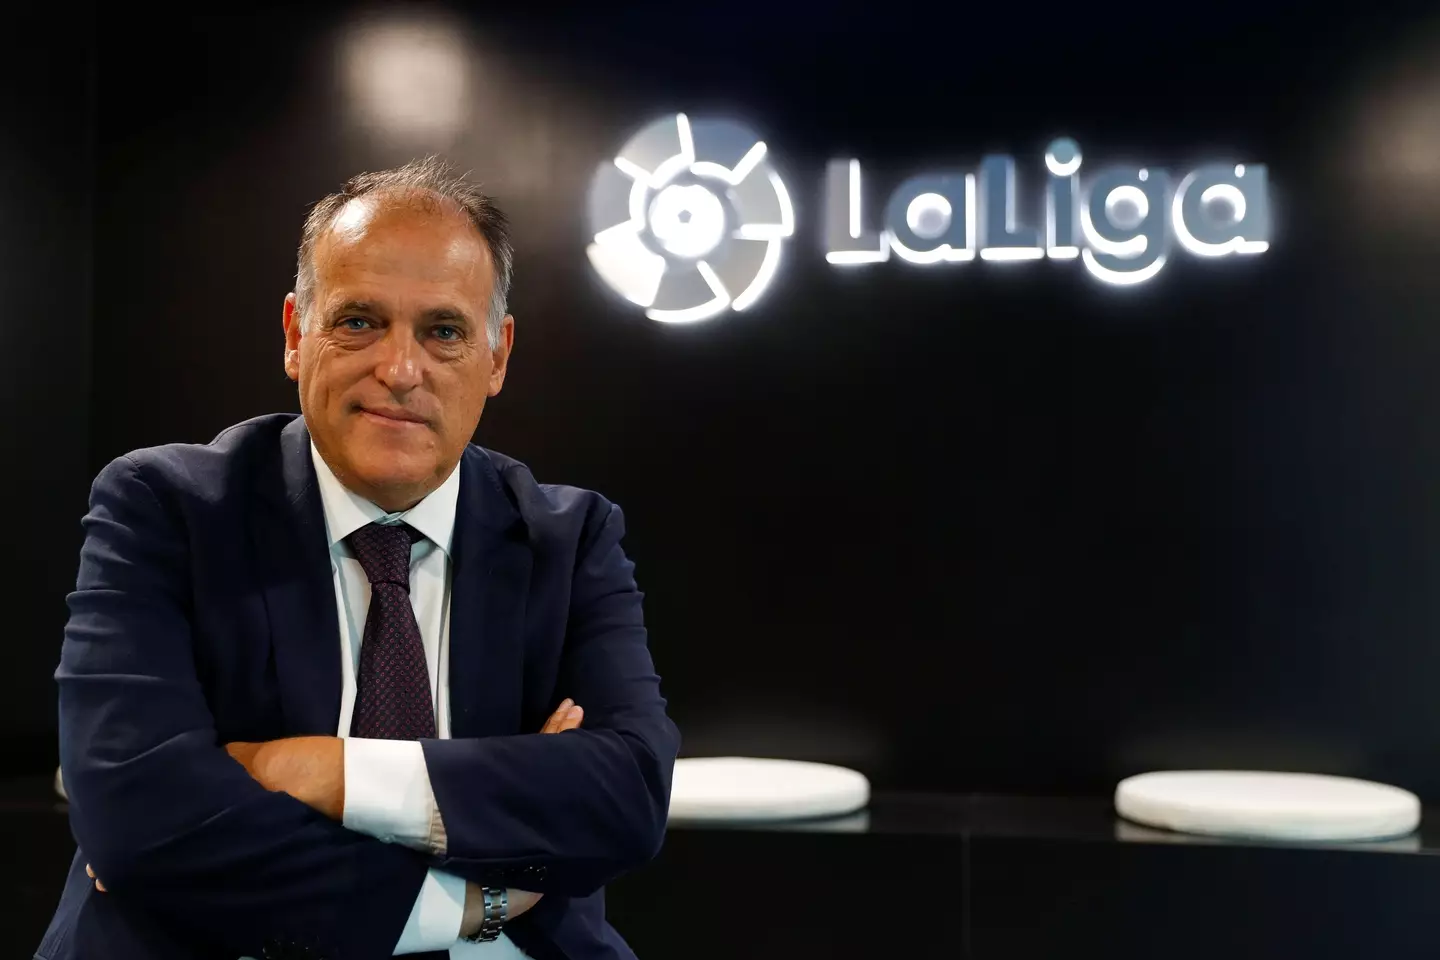 El presidente de LaLiga, Javier Tebas, quiere proteger su producto.  (